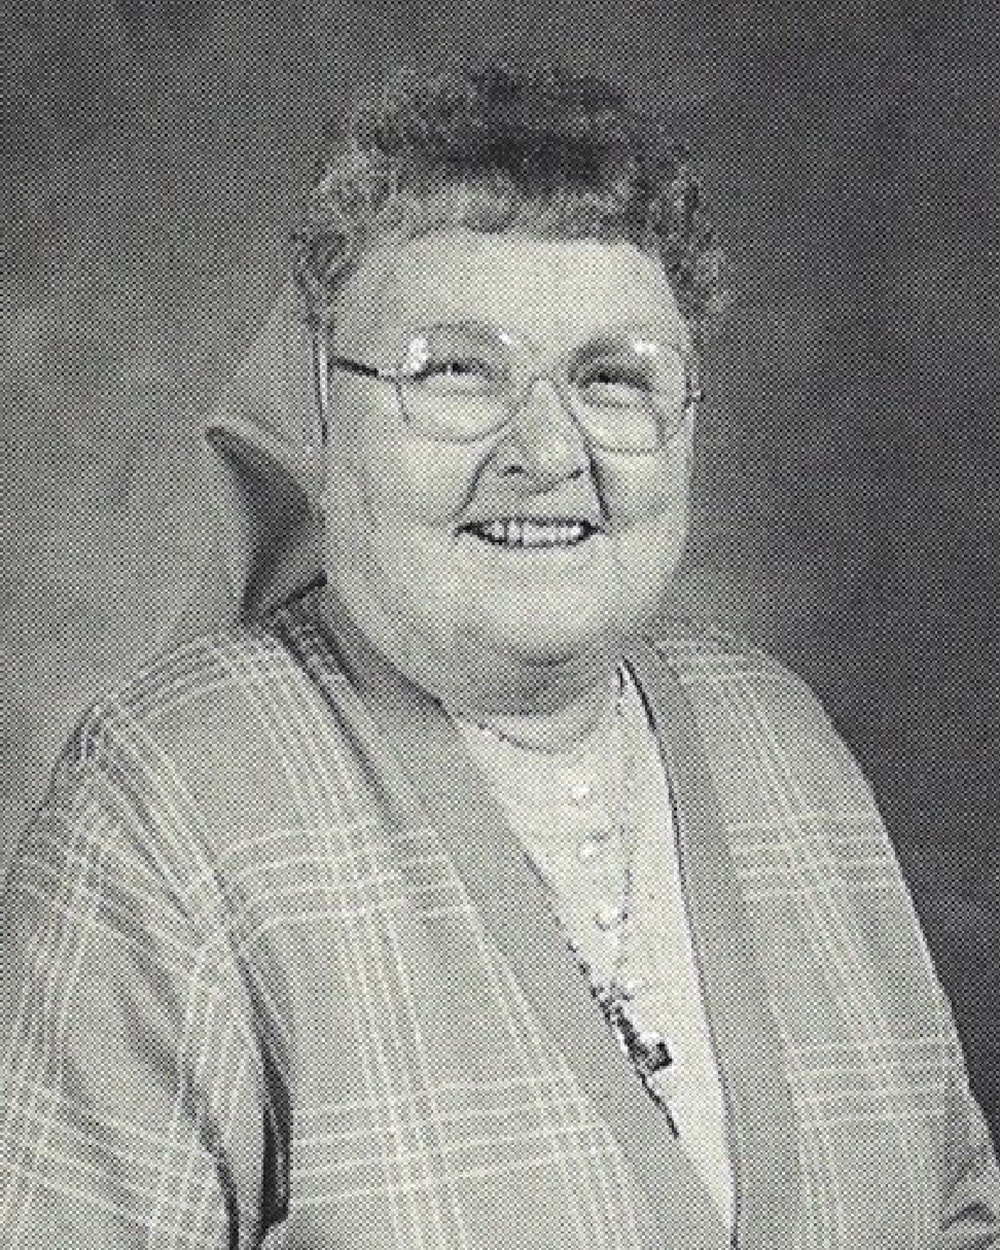 Sister-M.-Leontius-Zawistowski-OSF-1926-2004-2